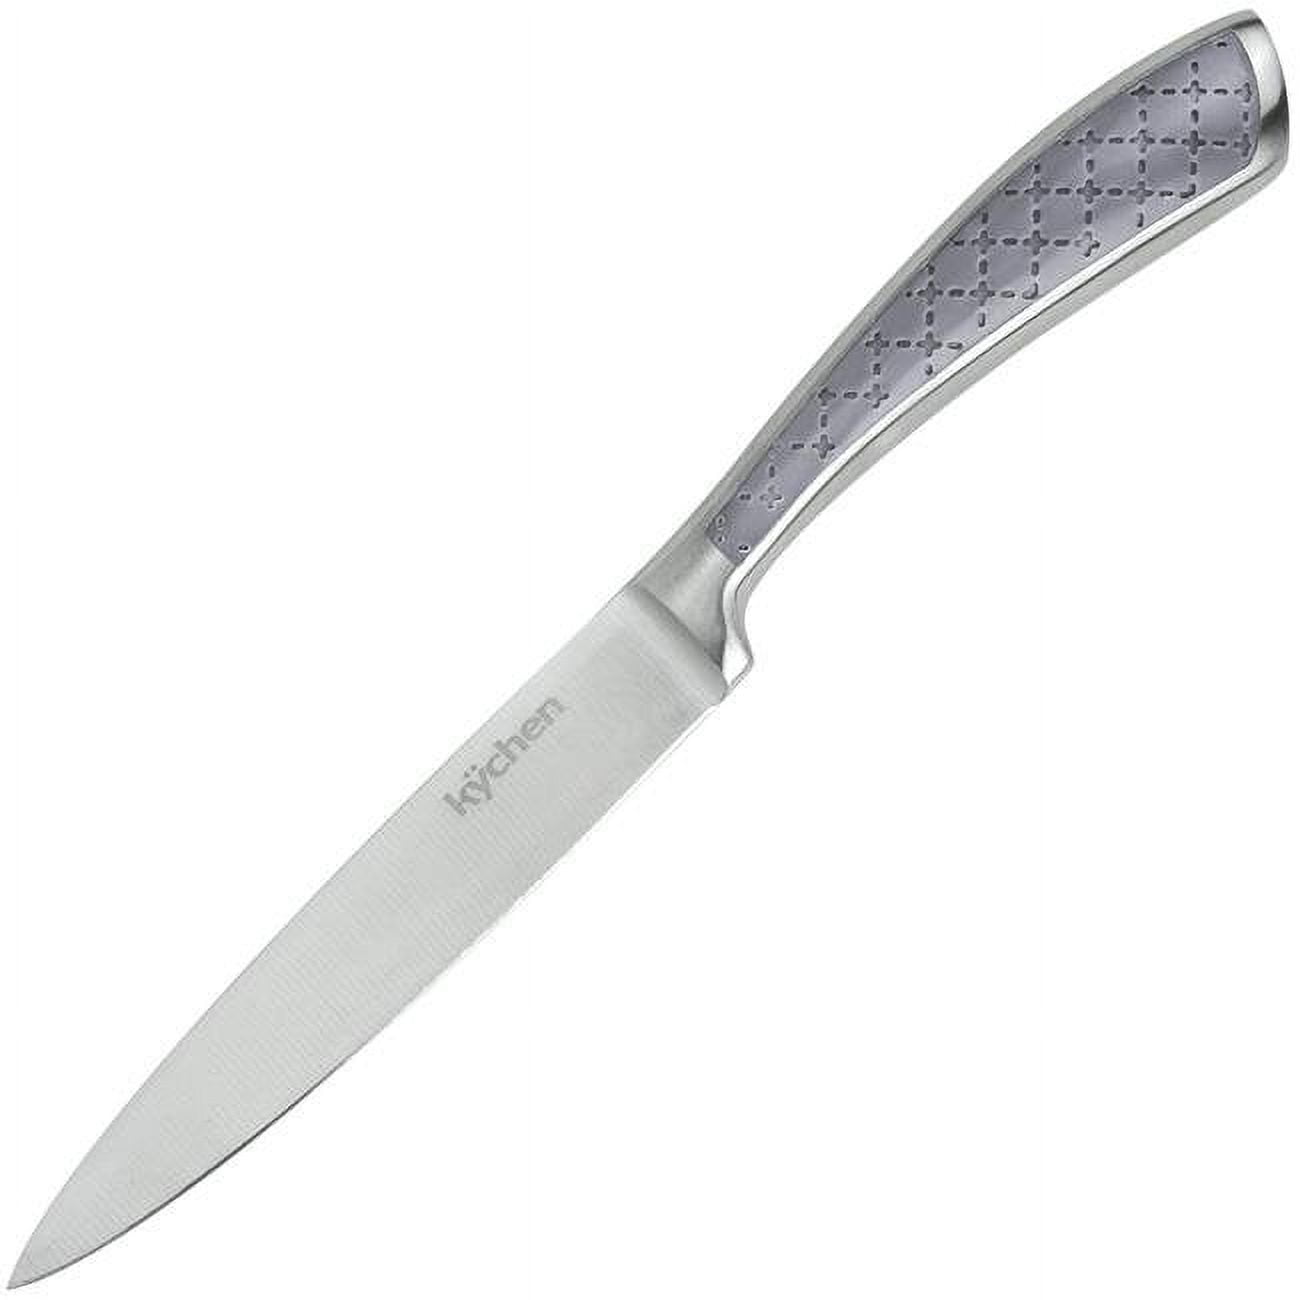 5 In. Tizona Utility Knife